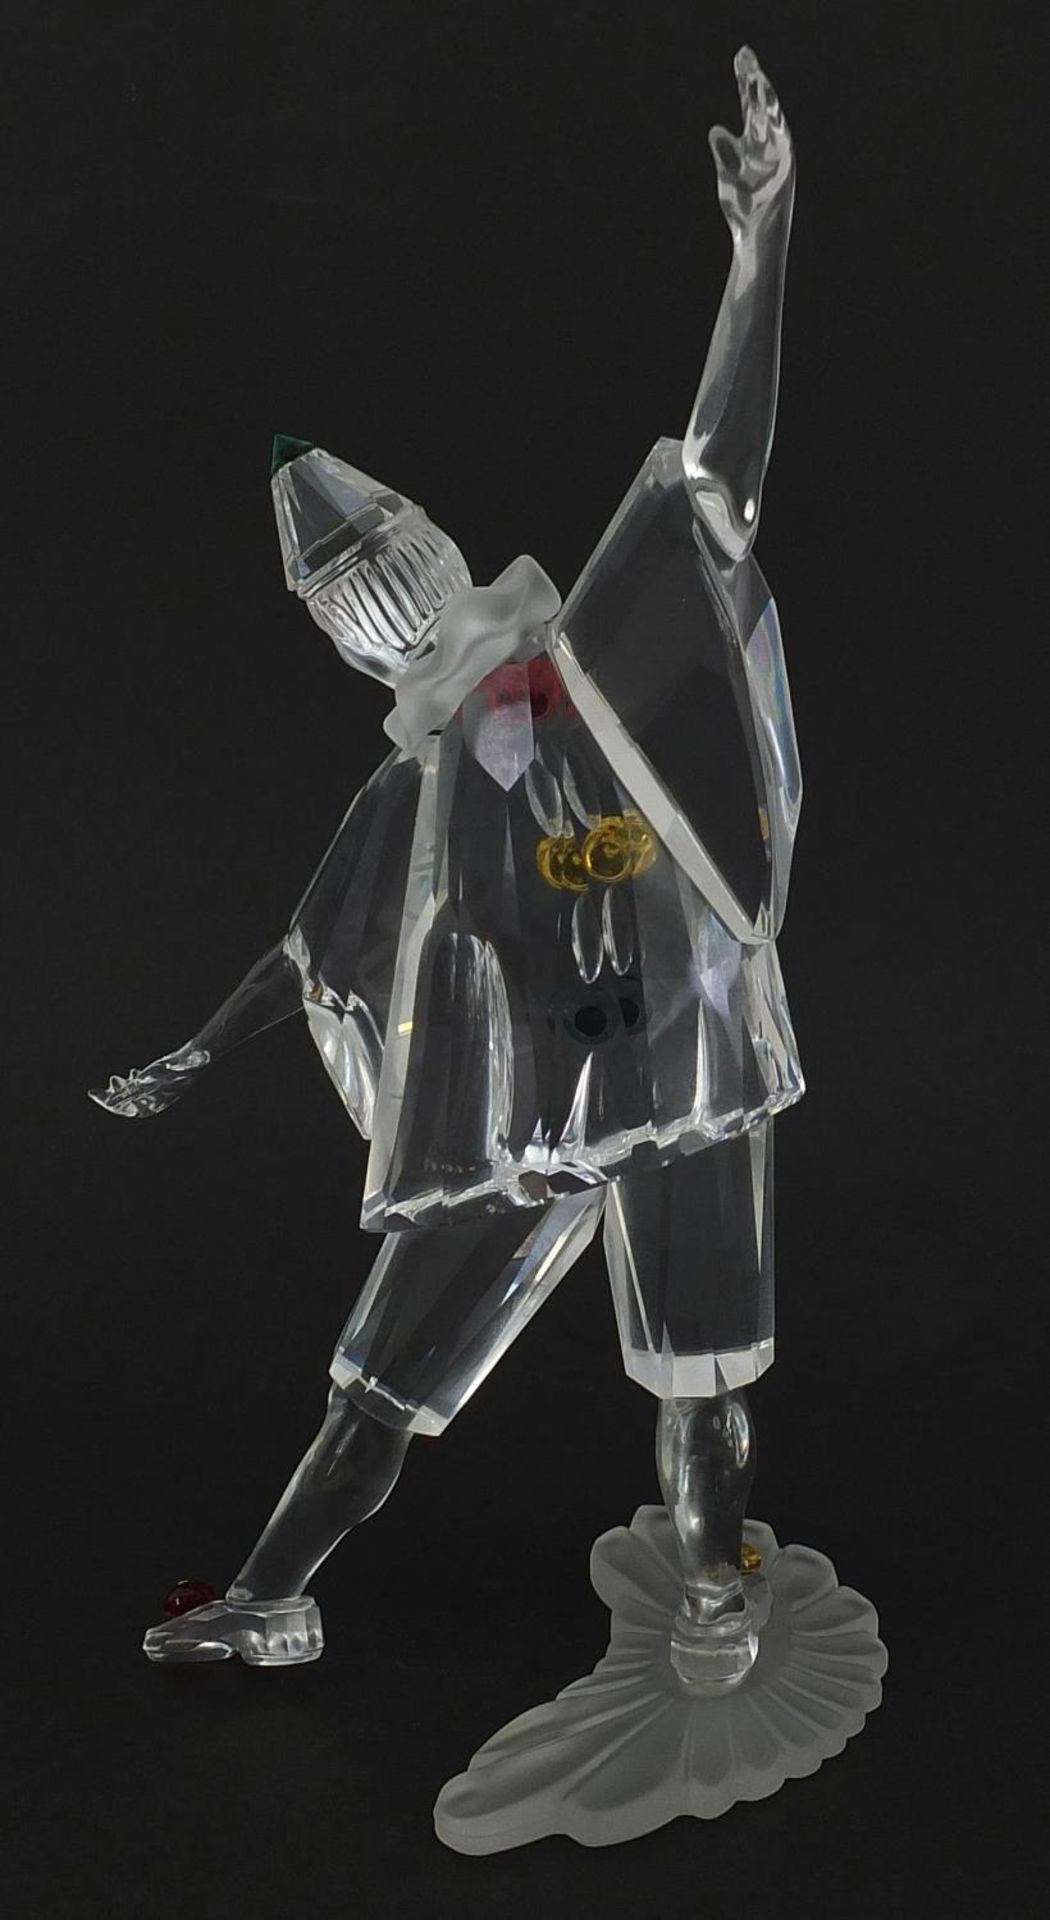 Swarovski crystal Masquerade Pierrot figure with box, 20cm high - Bild 2 aus 6